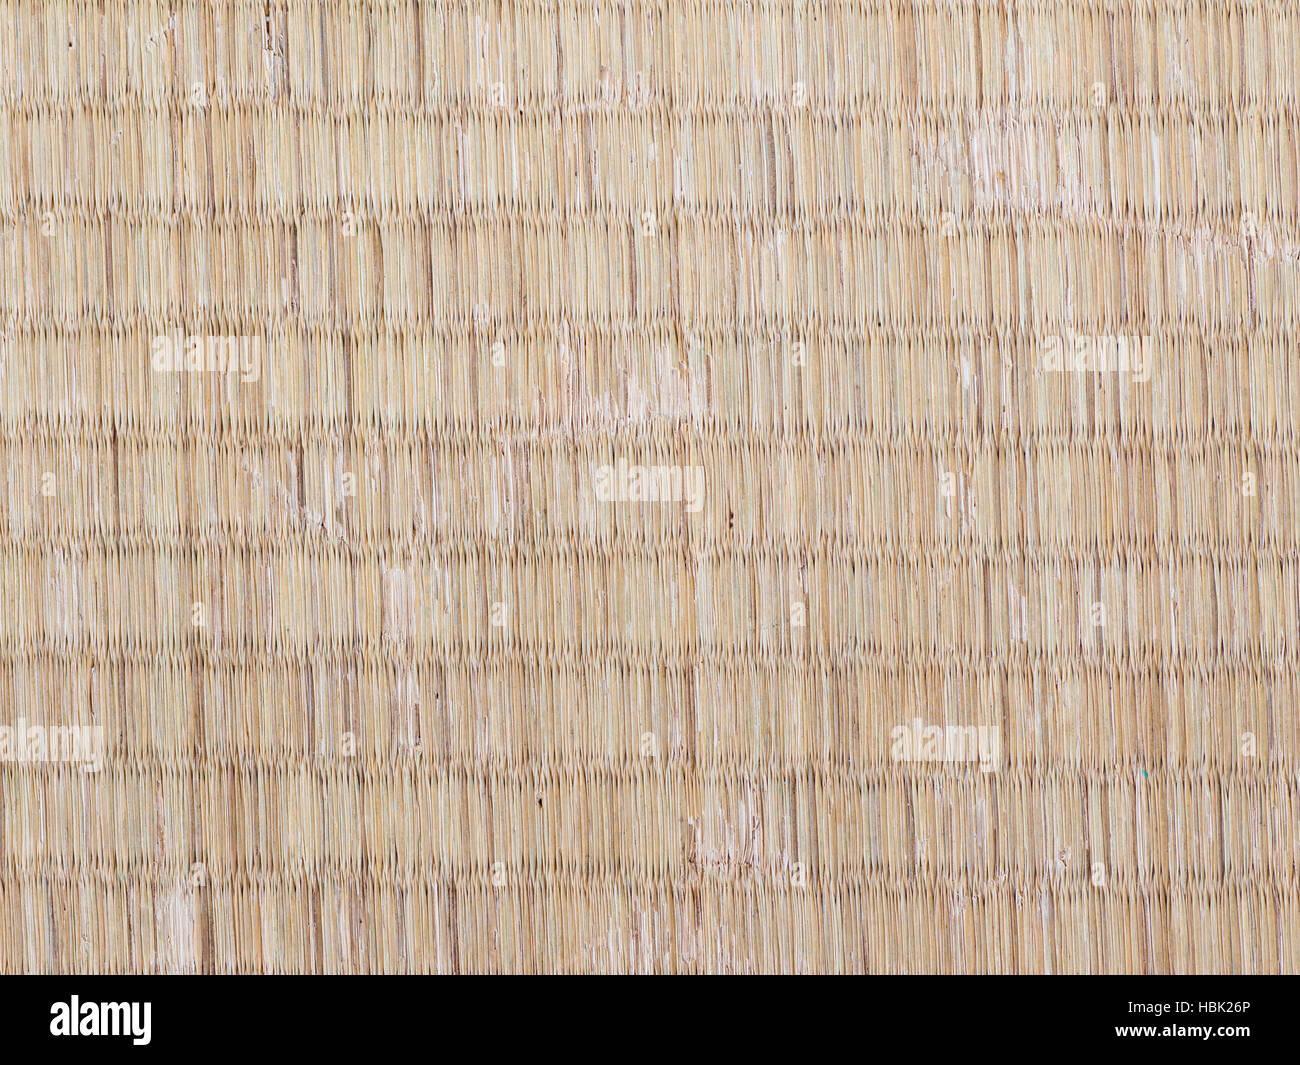 Tatami mat texture hi-res stock photography and images - Alamy